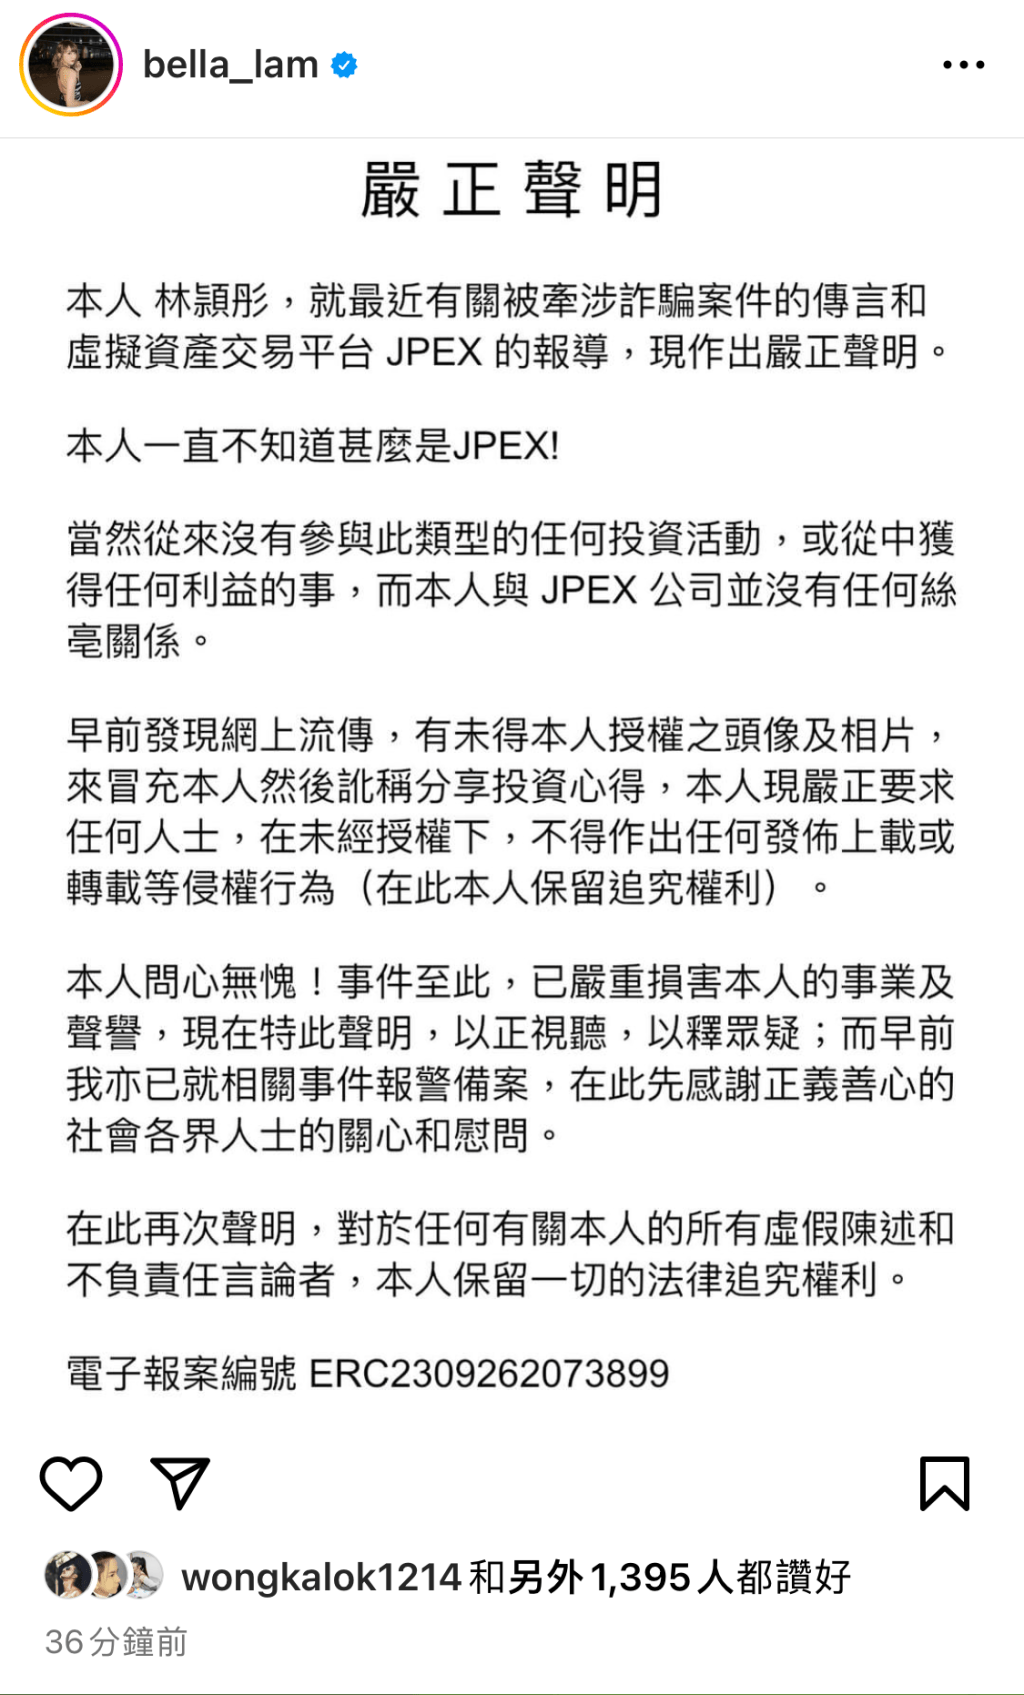 林颖彤日前在IG发声明否认与JPEX案有关。